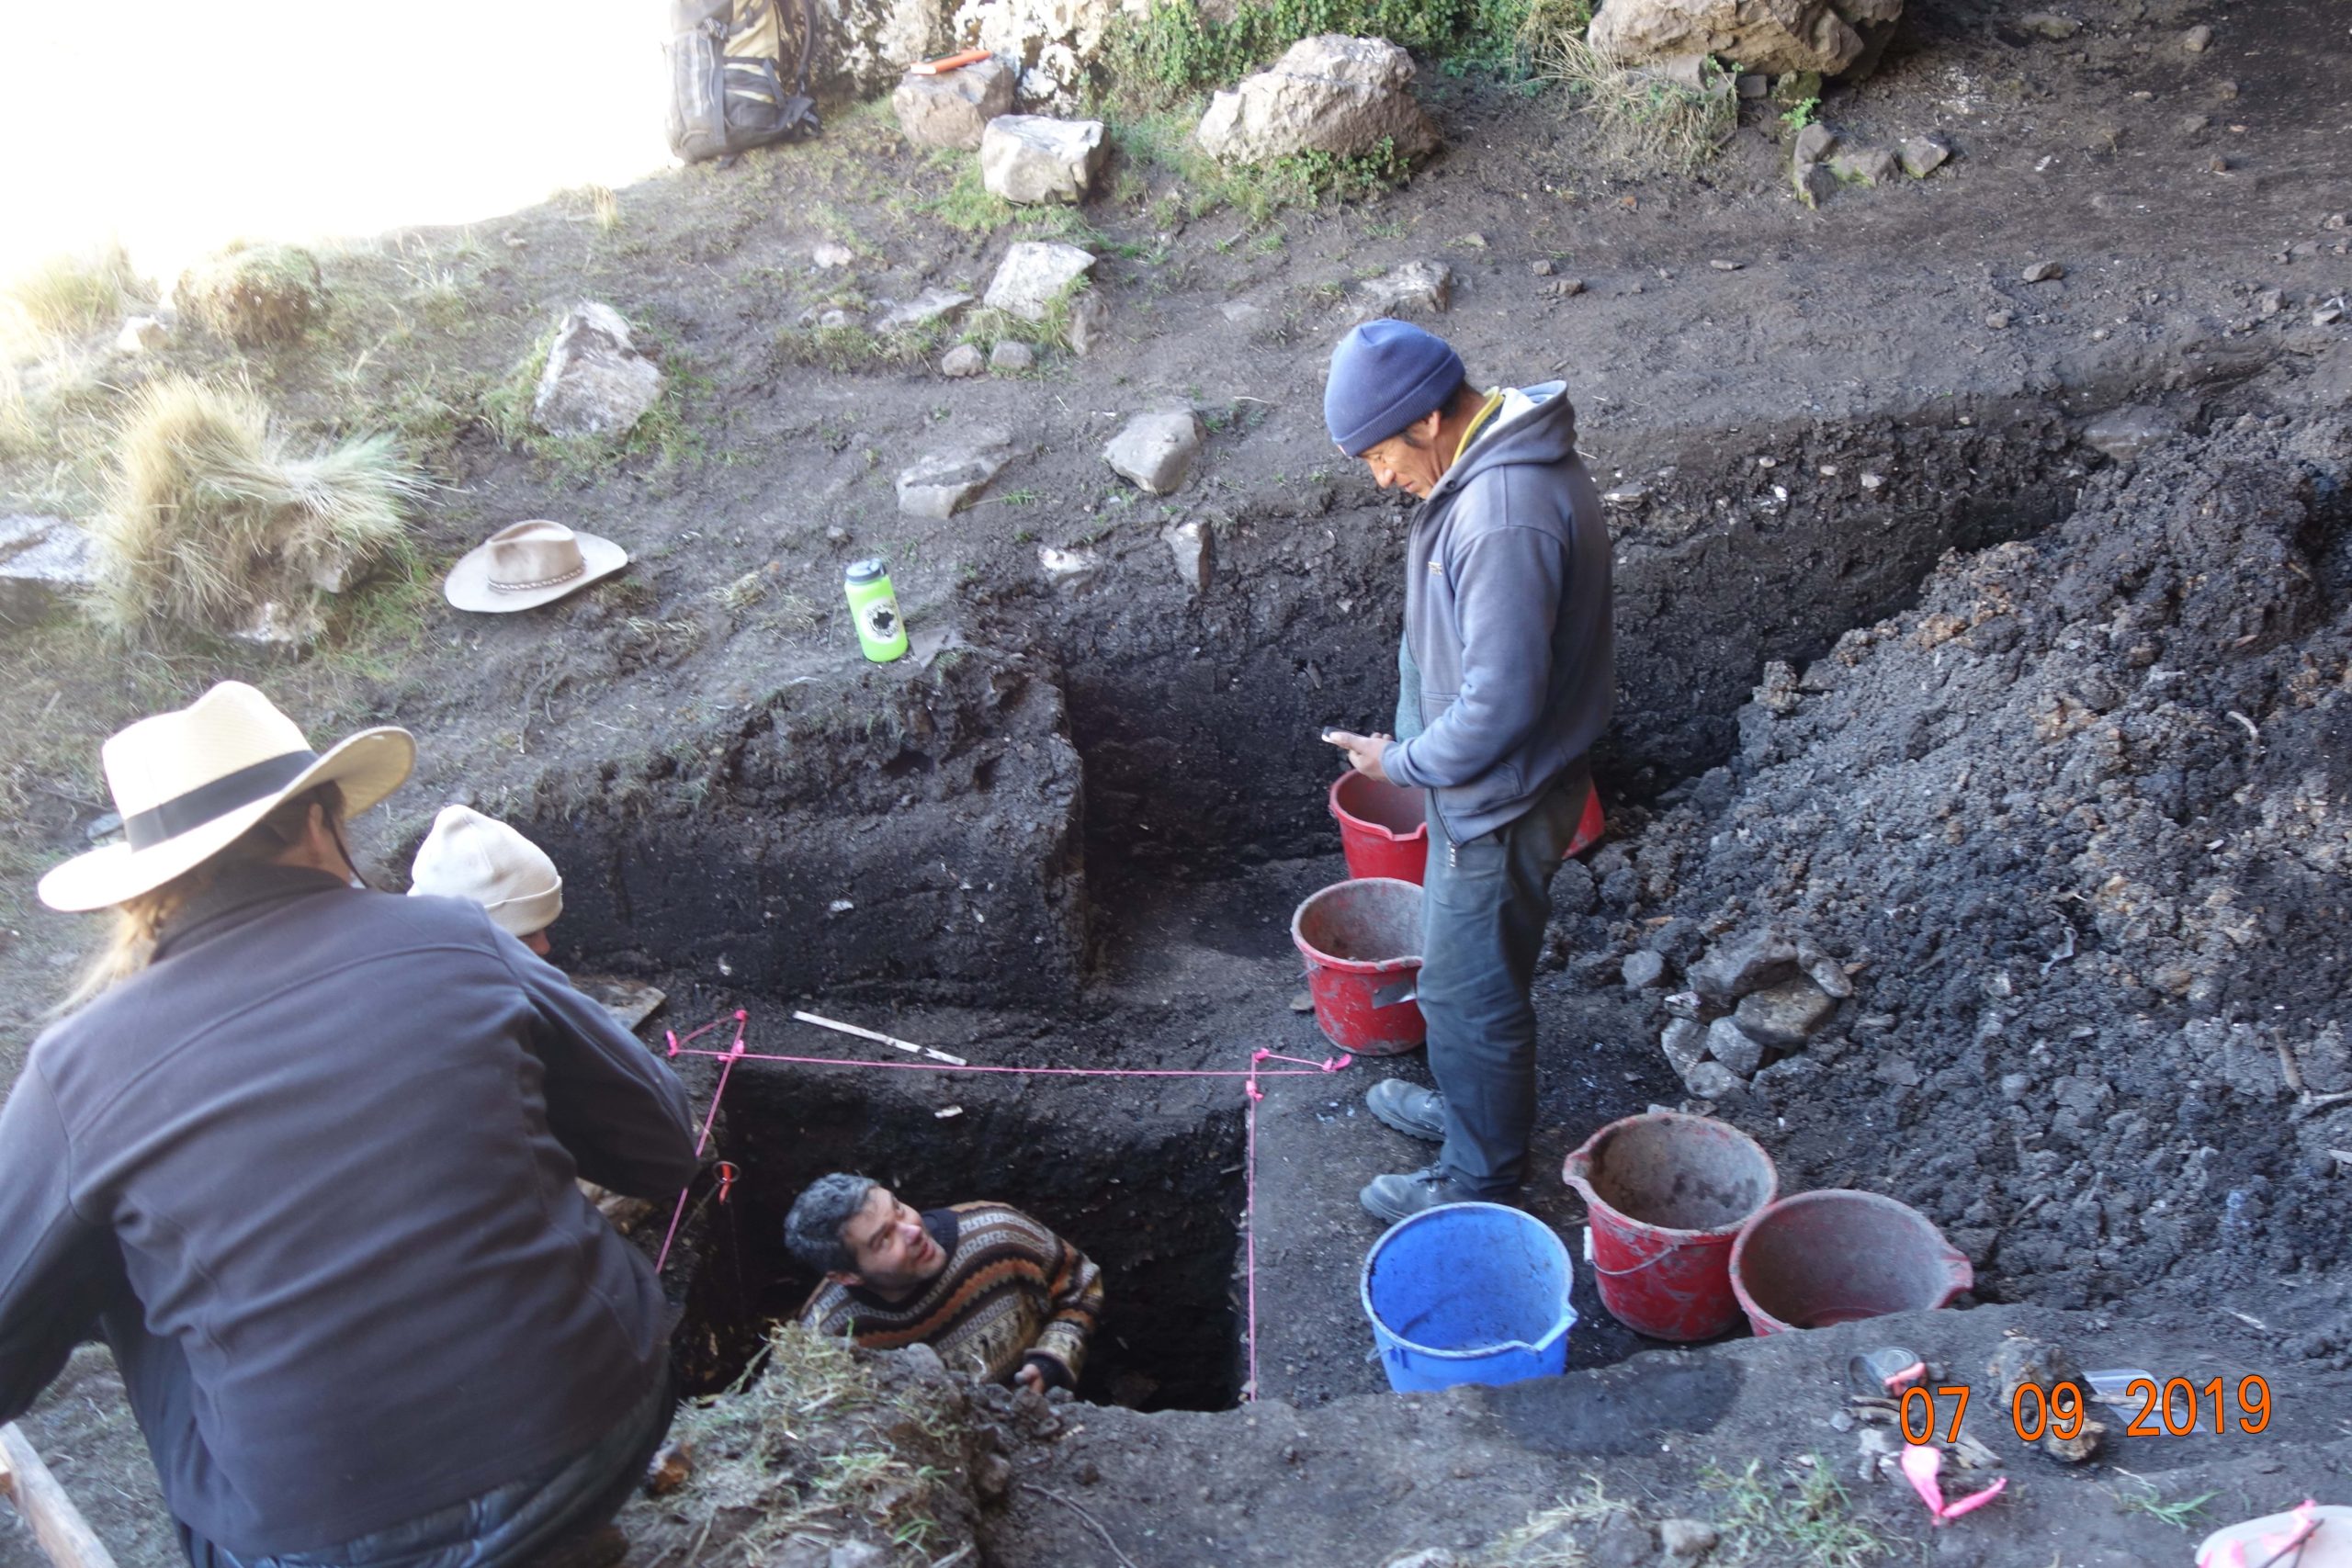 Excavators working in the field.